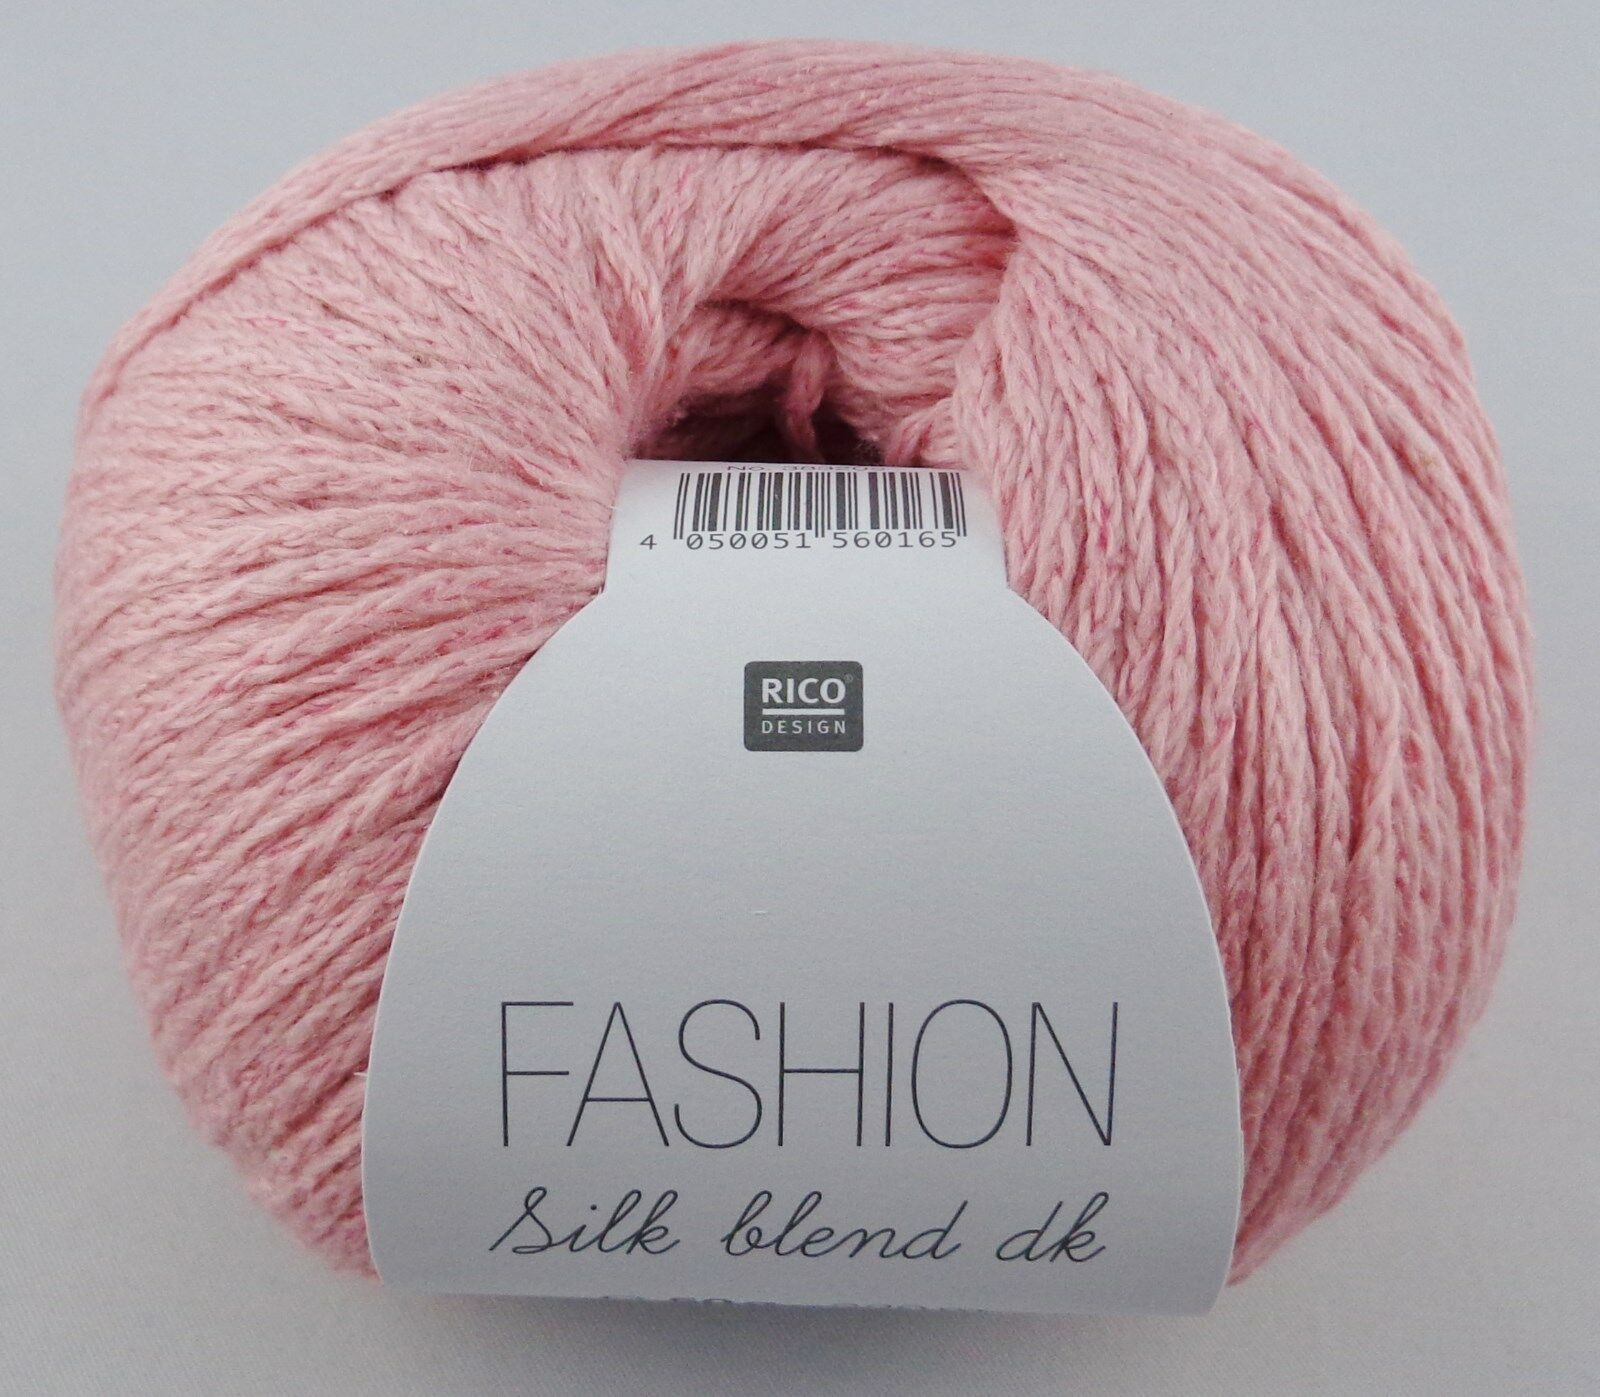 50g Rico Fashion Silk Blend Dk Wolle Garn Zum Stricken Häkeln Gp 159 80€ 1kg Ebay